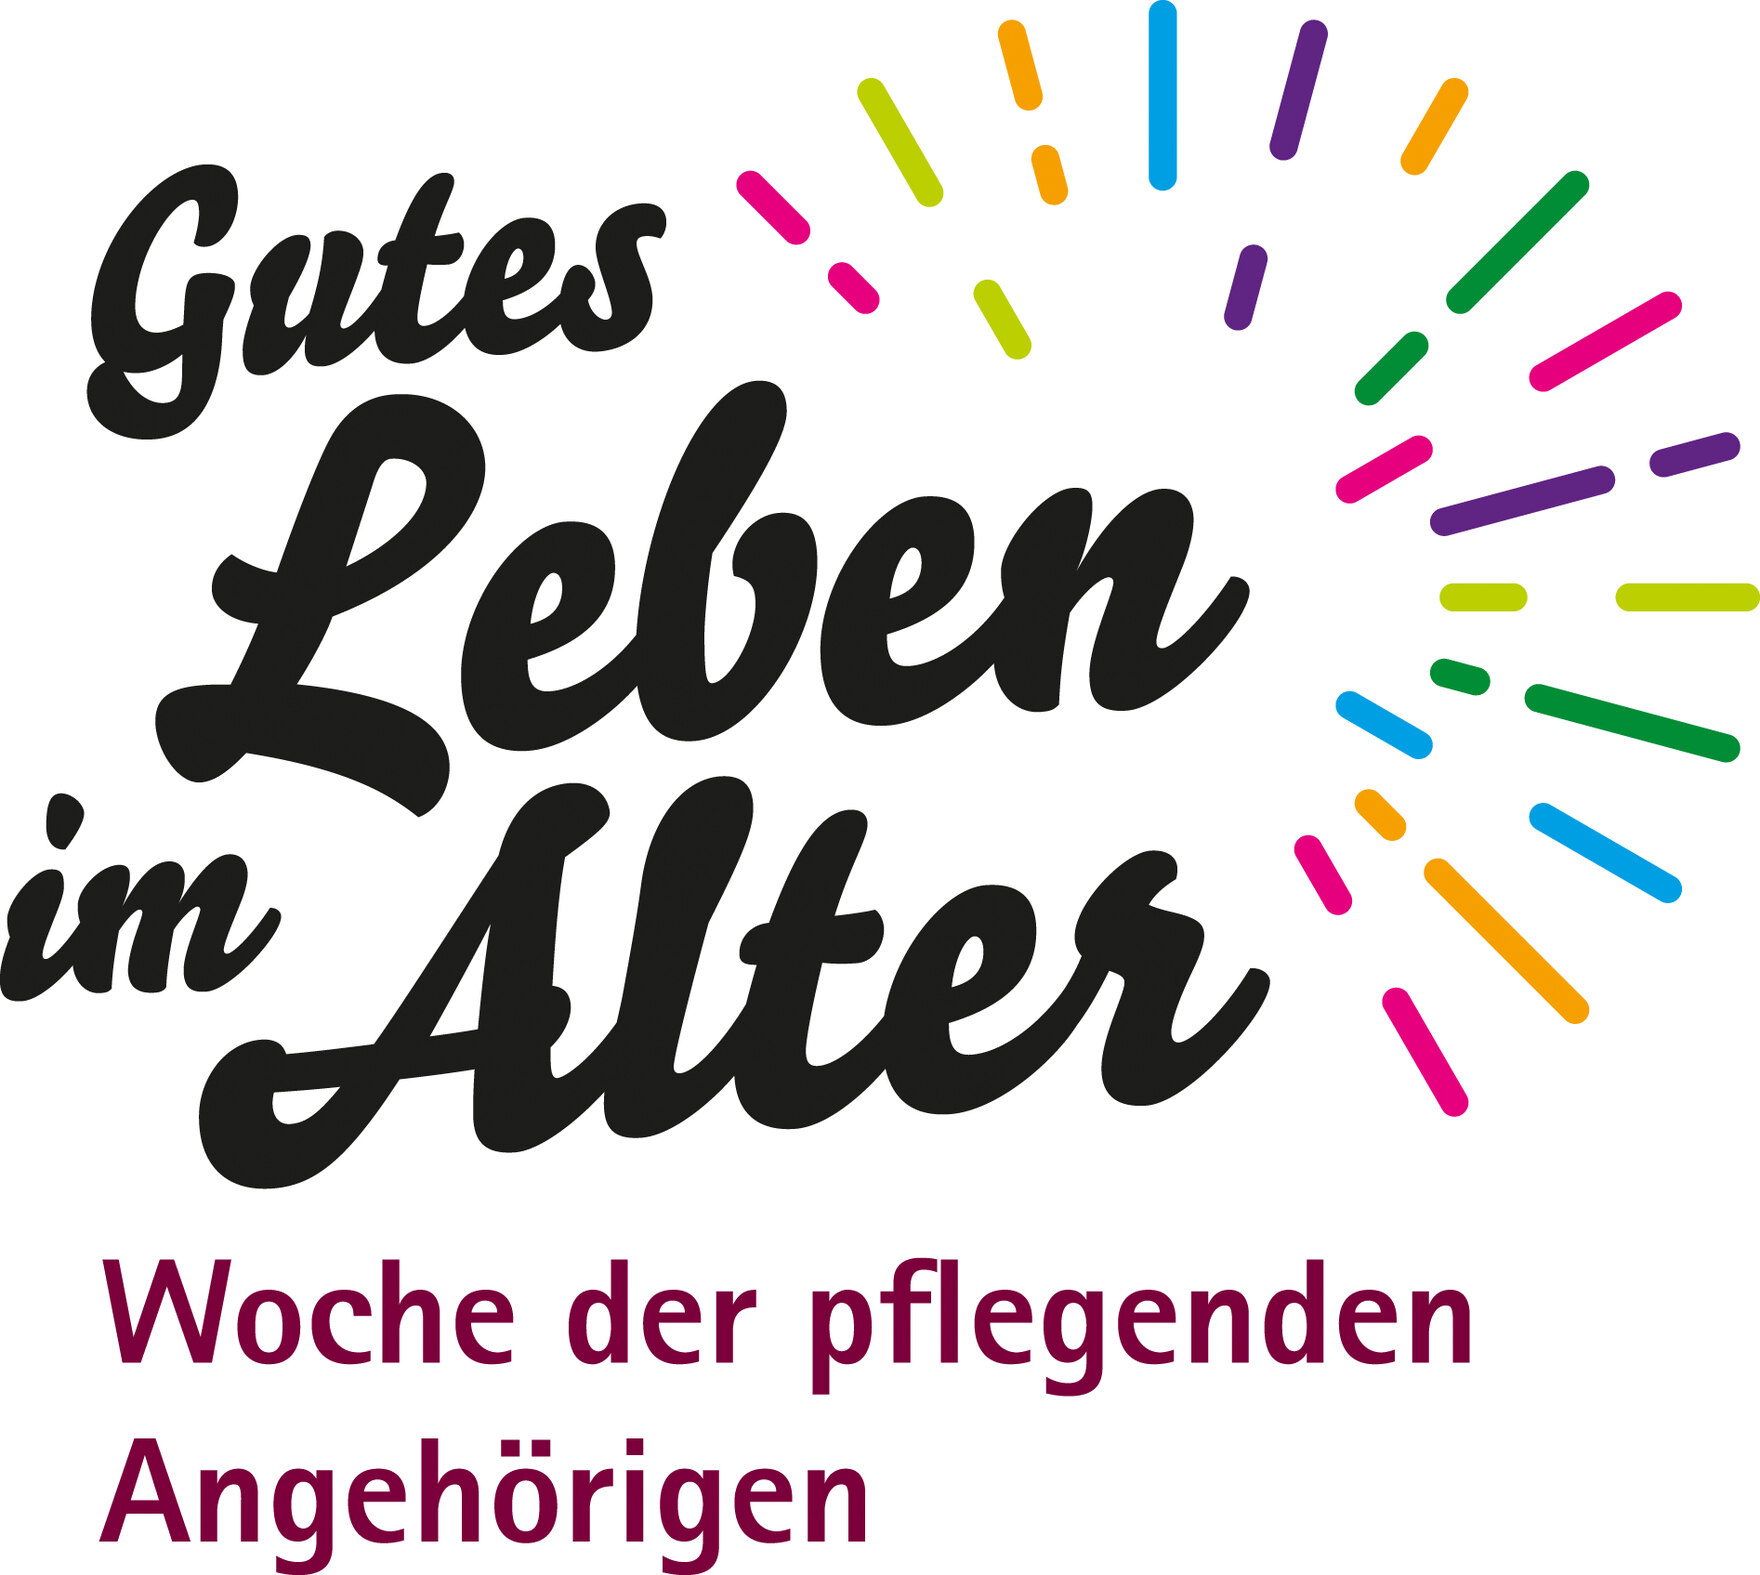 Buntes Logo mit der Aufschrift "Gutes Leben im Alter - Woche der pflegenden Angehörigen"